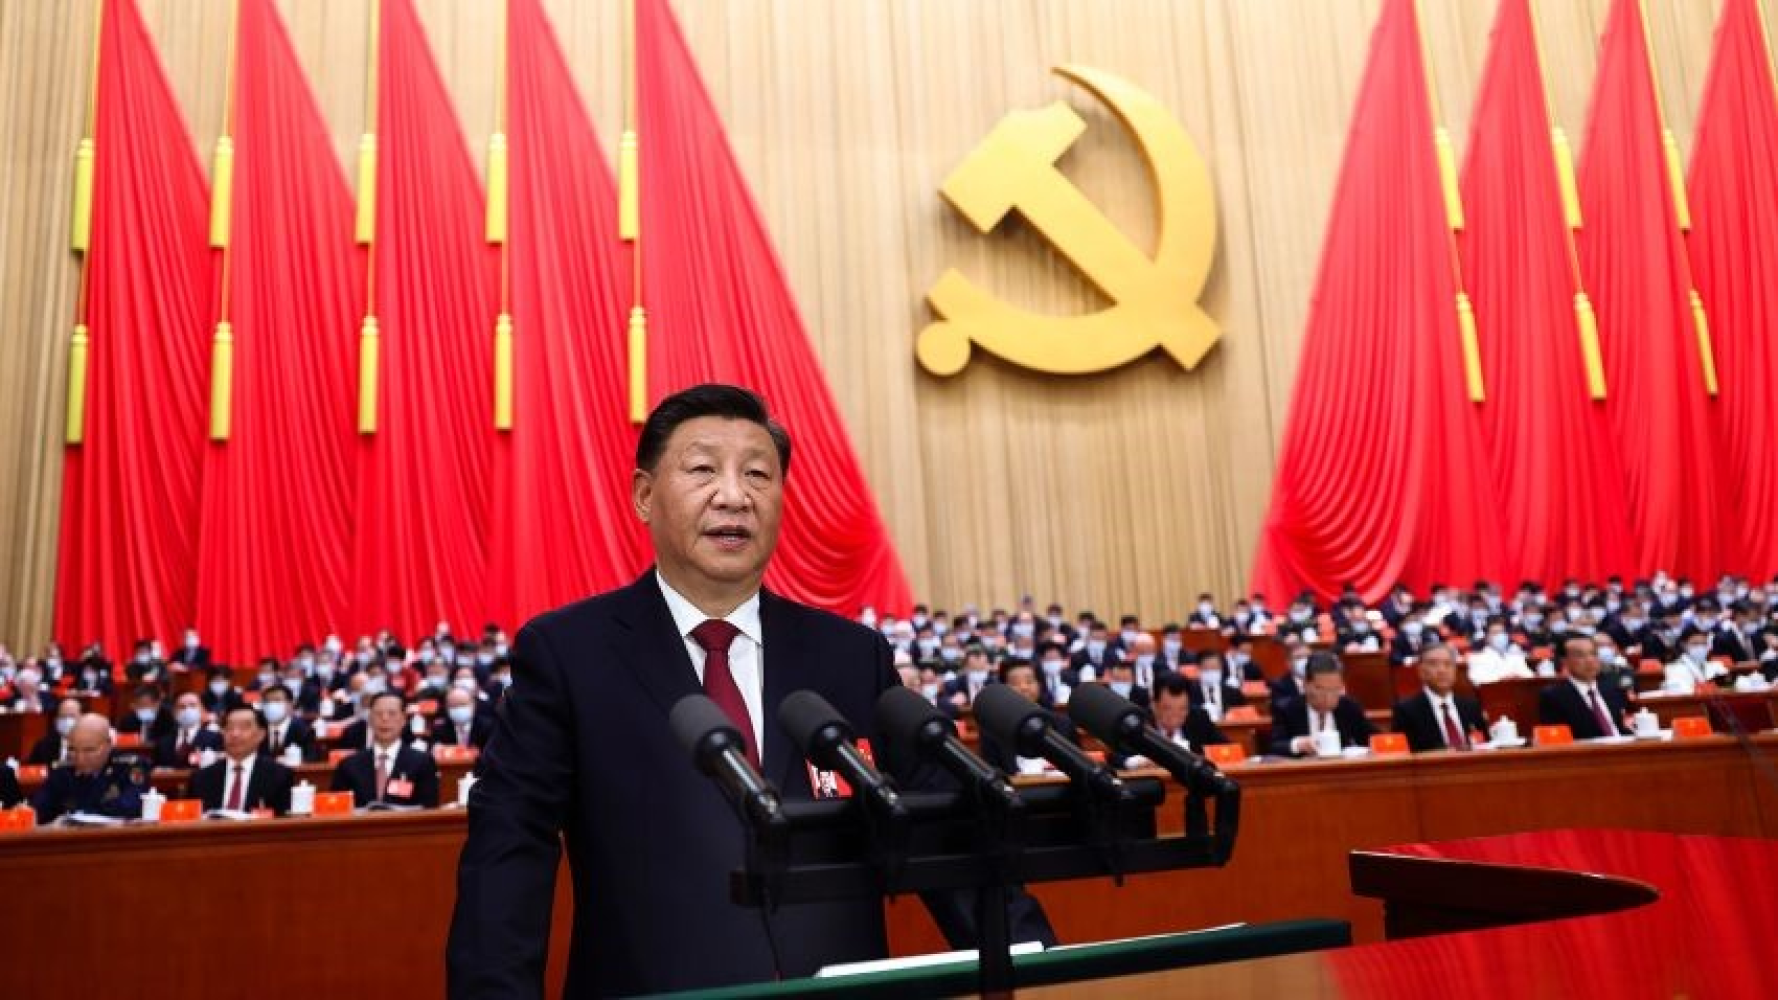 Xi Jinping third term